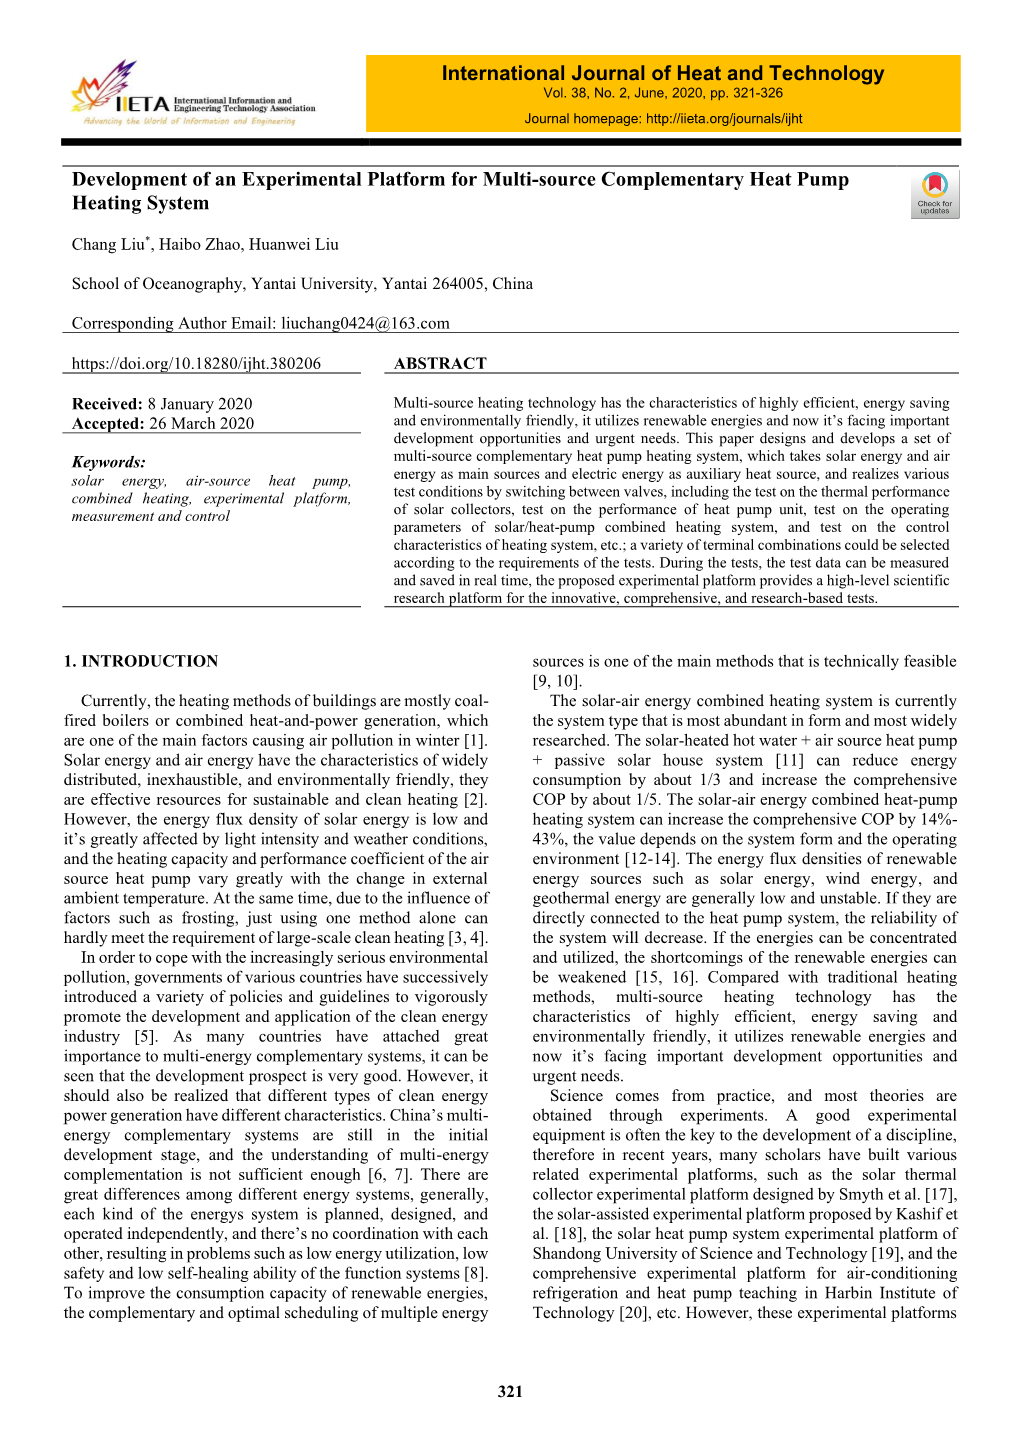 Development of an Experimental Platform for Multi-Source Complementary Heat Pump Heating System International Journal of Heat An